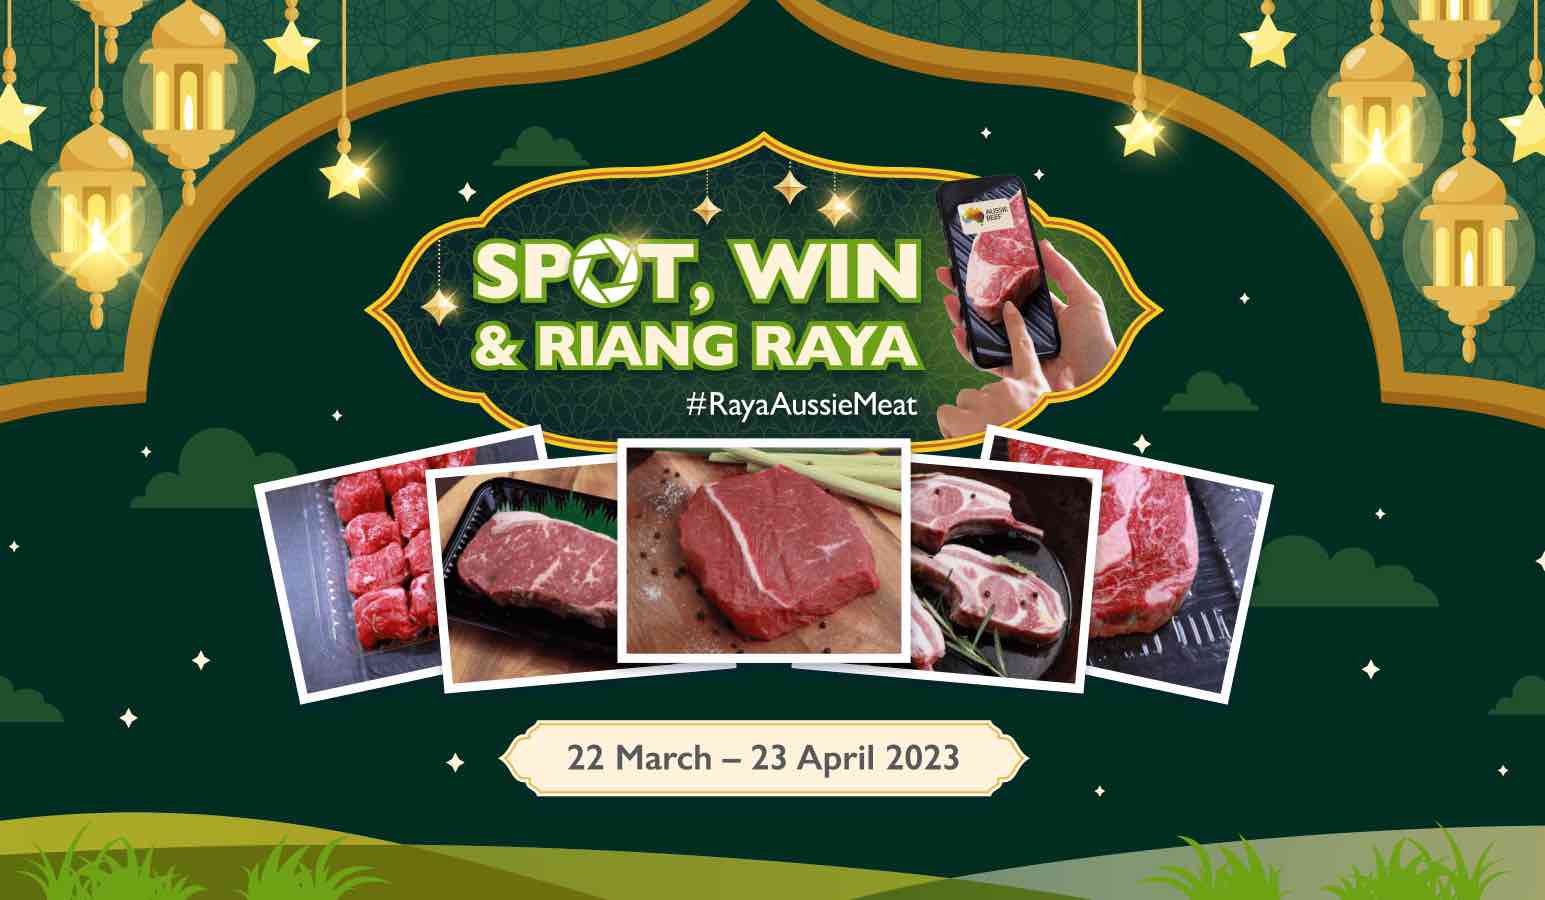 Spot, Win & Riang Raya